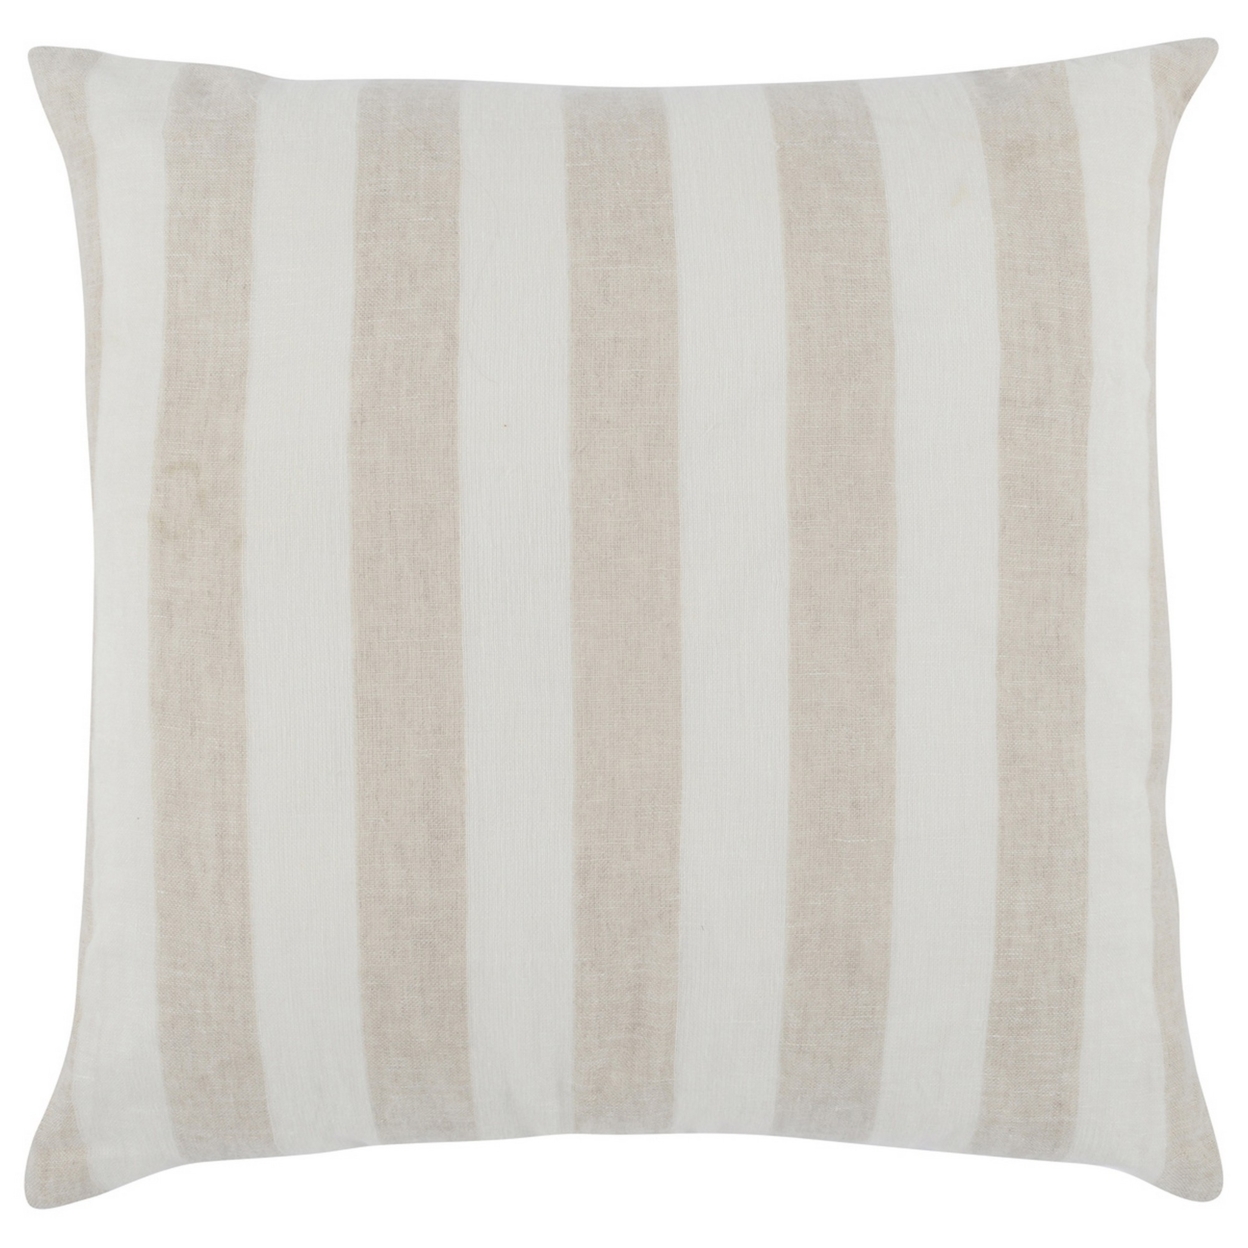 26 X 26 Throw Pillow, Woven Stripes, Square, Hidden Zipper, Natural, Ivory- Saltoro Sherpi